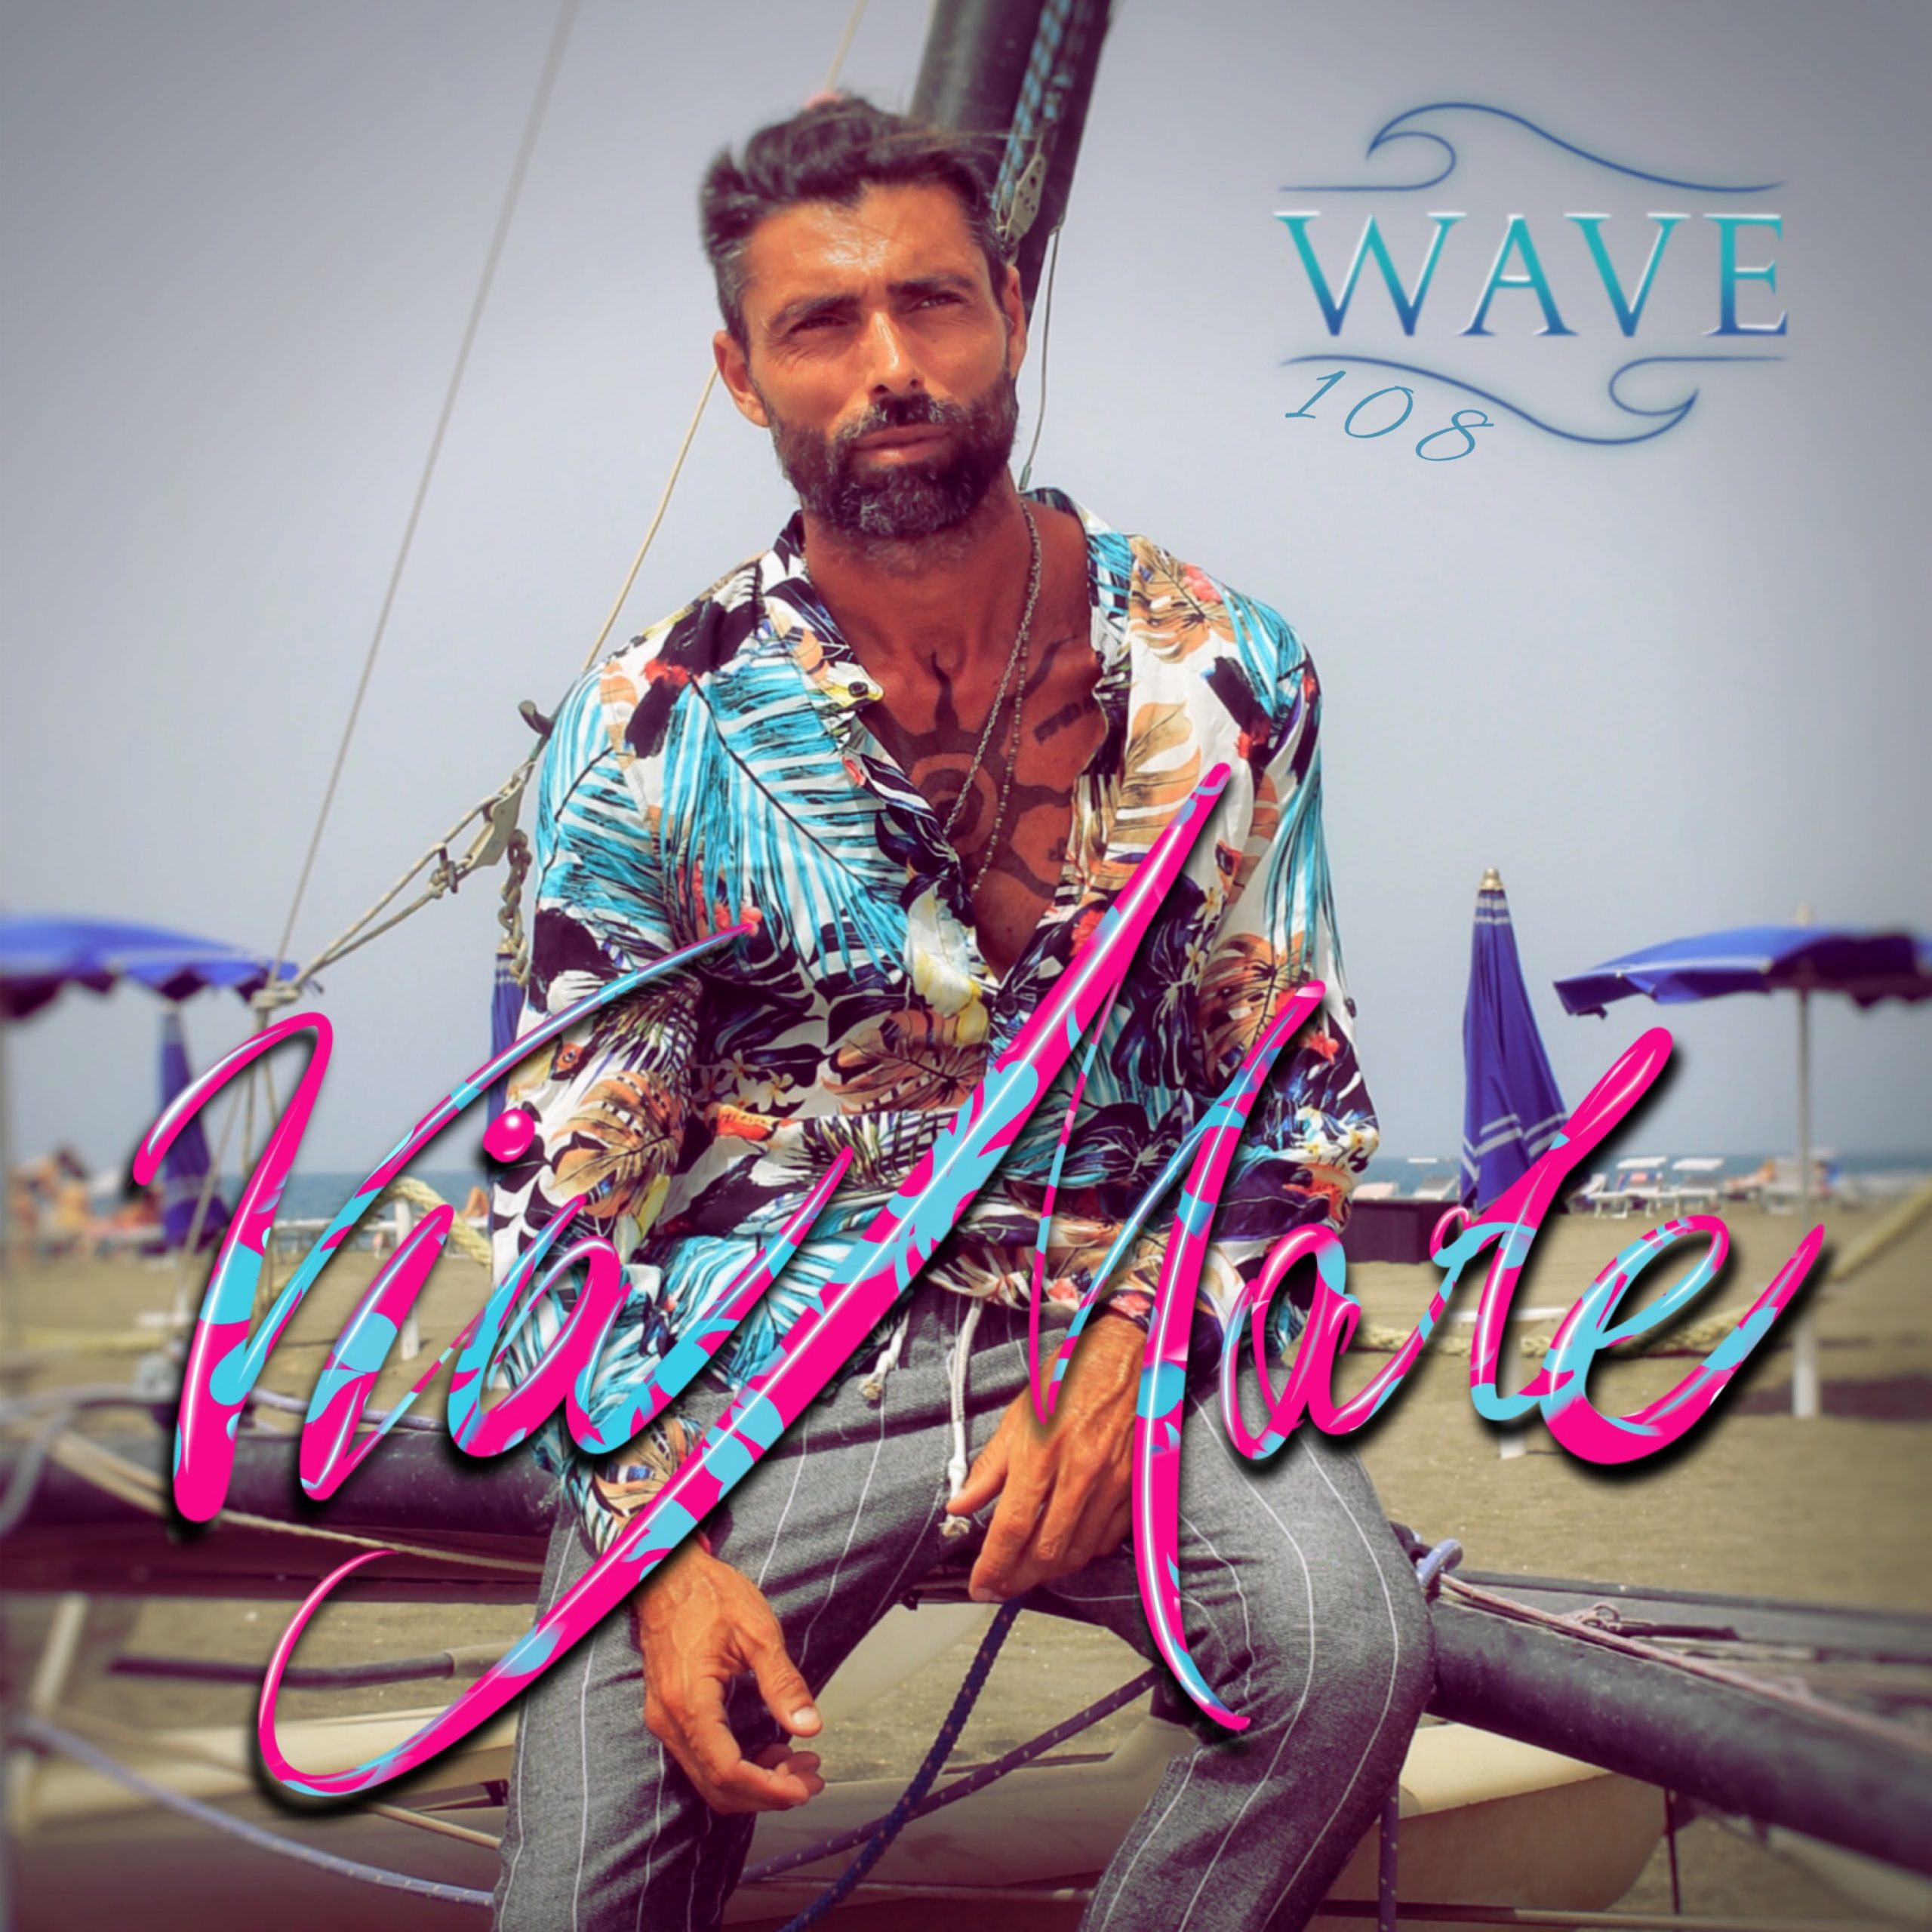 “Via mare” by Wave108 è fuori ora ovunque